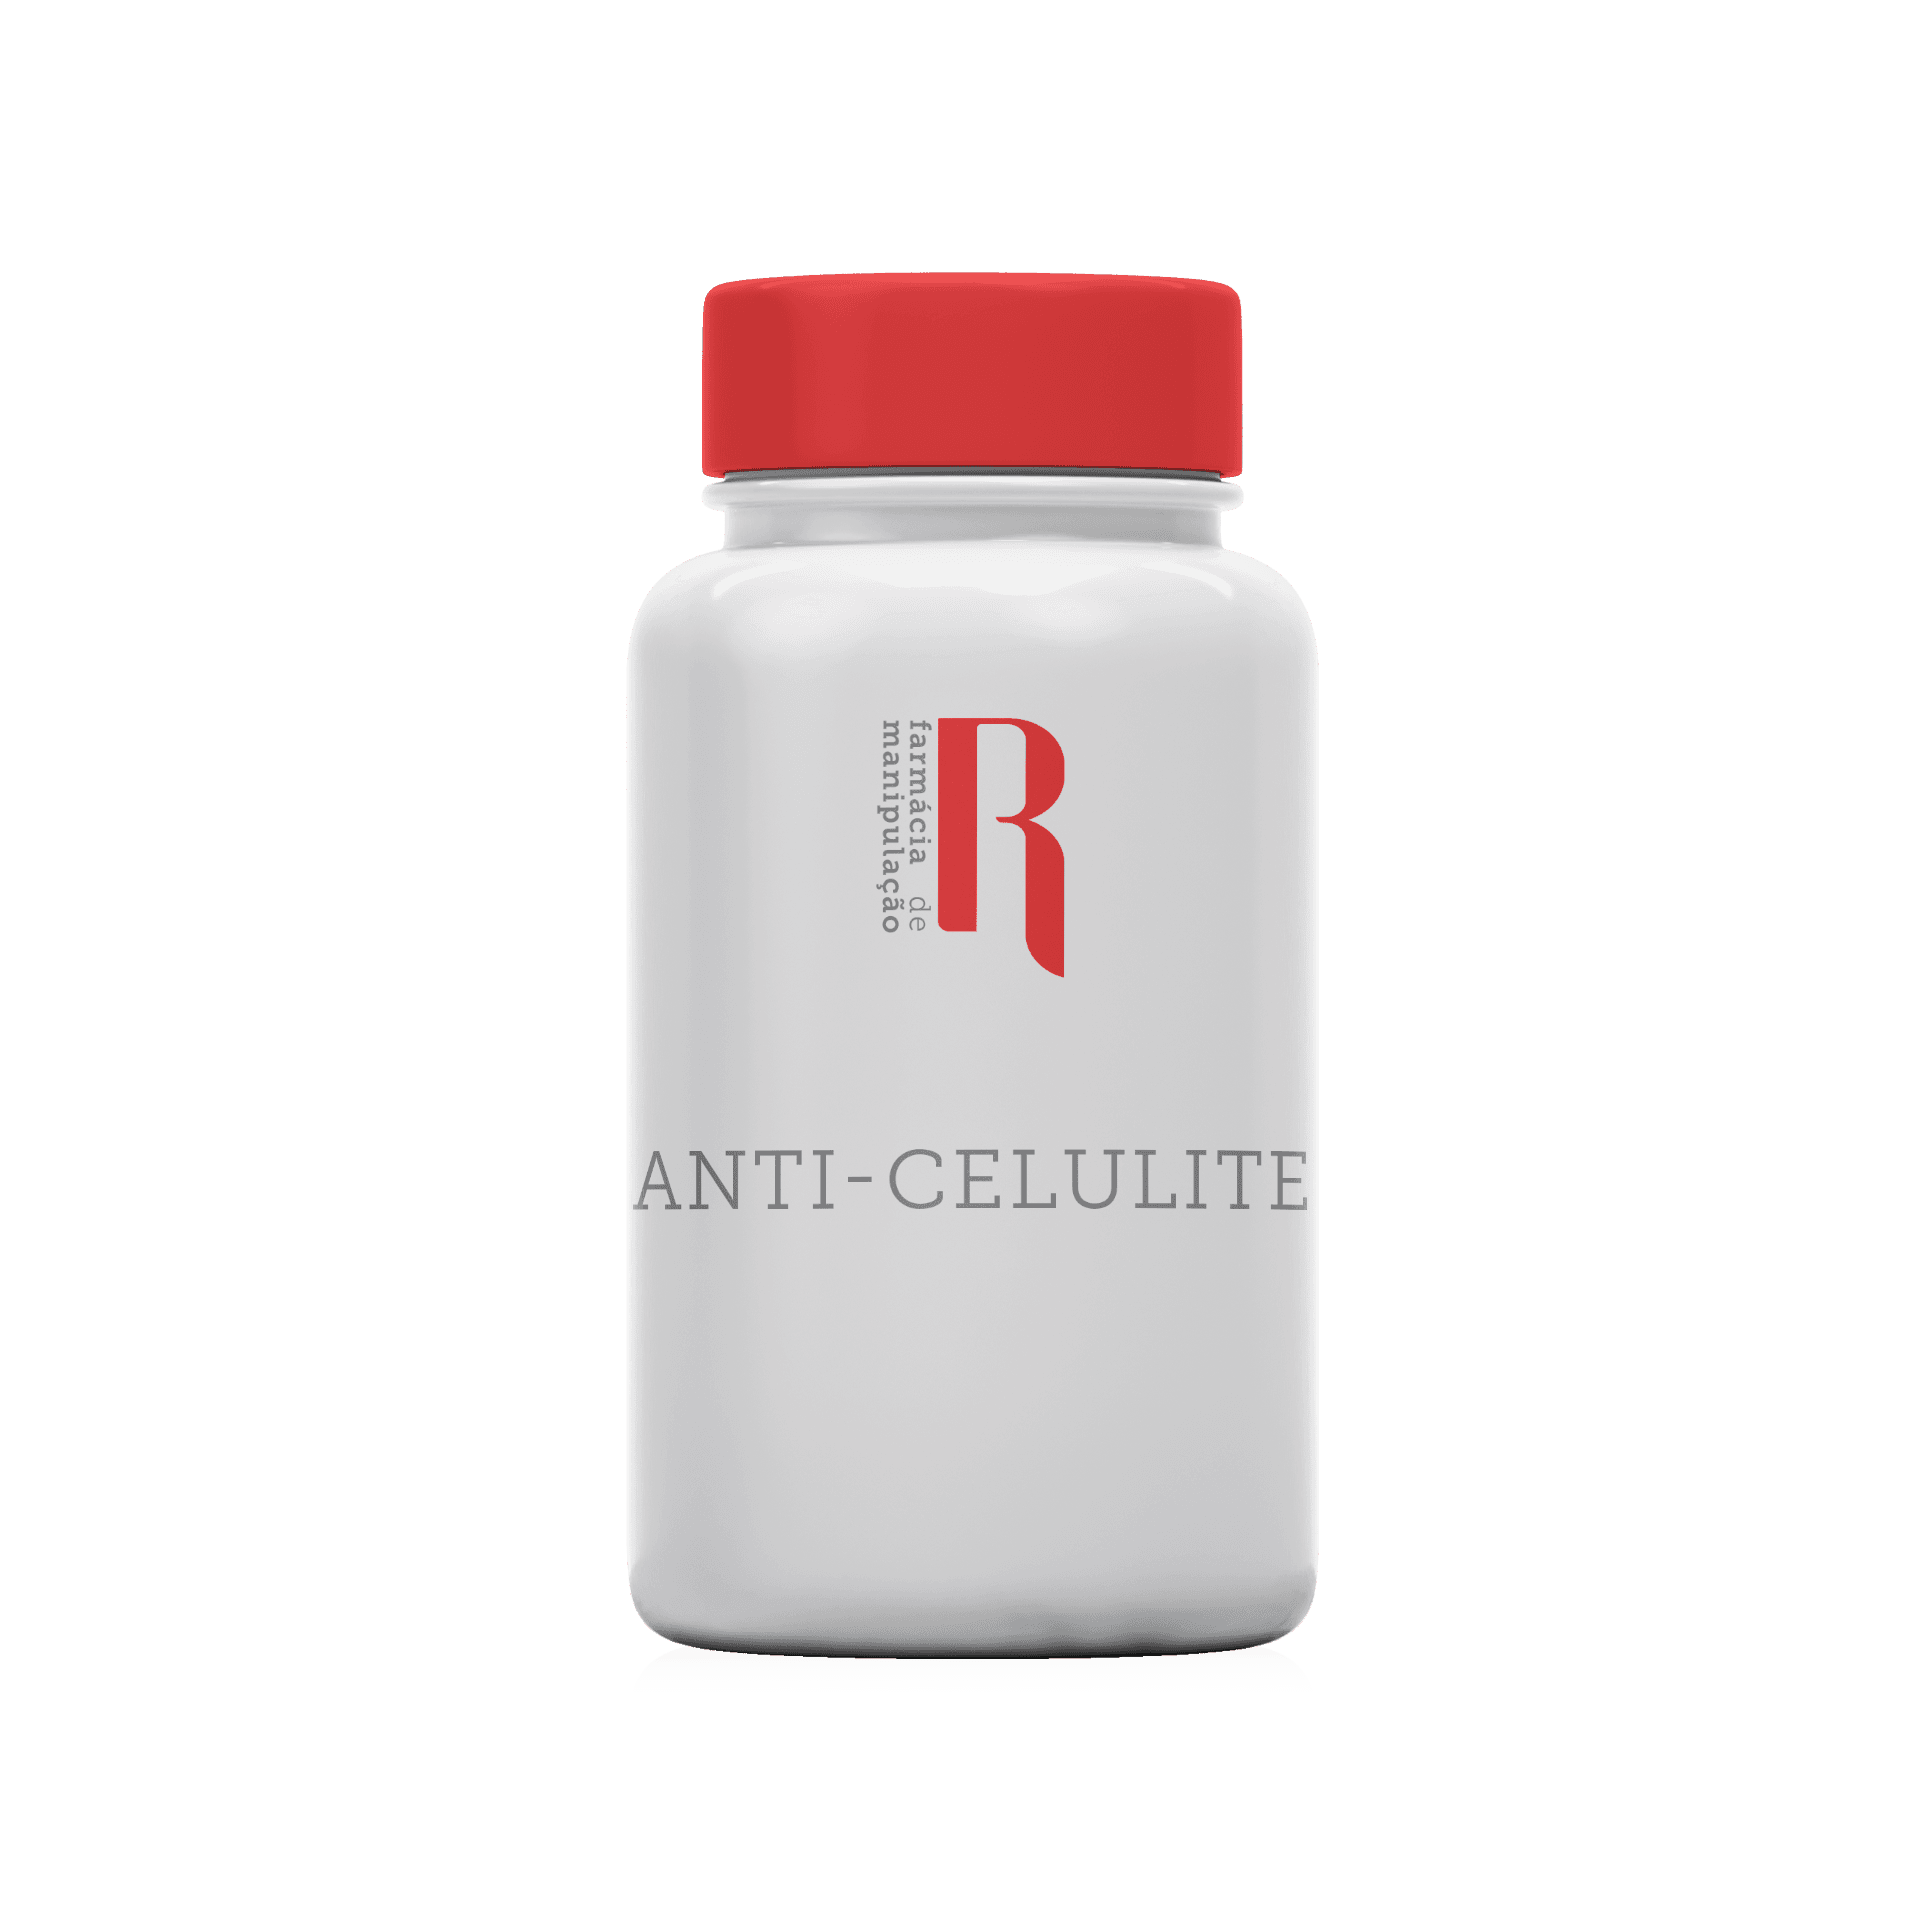 anti-celulite botica de rossi